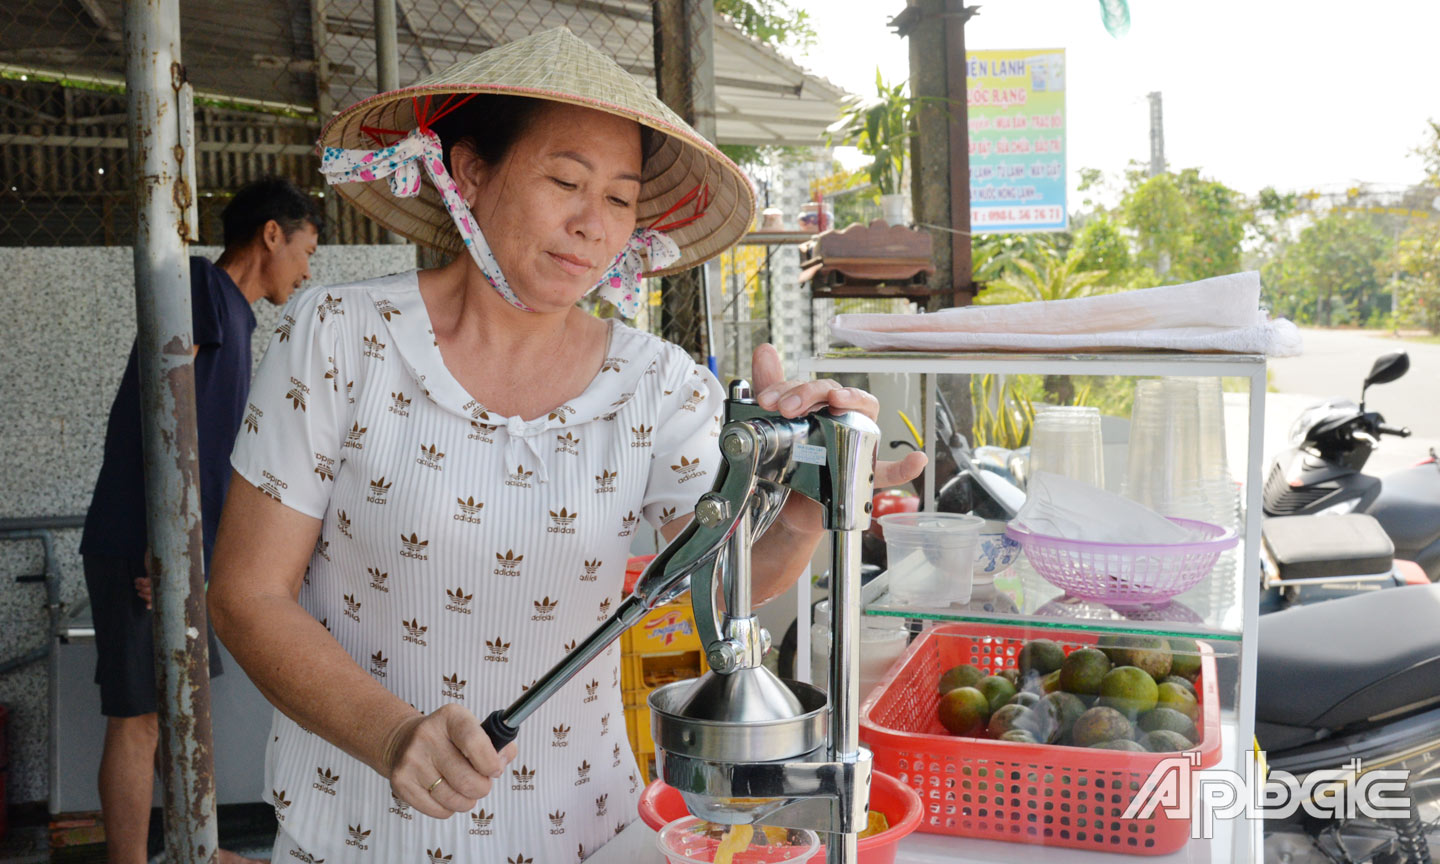 Từ nguồn vốn Dự án “Hỗ trợ mua bán nhỏ lẻ”, chị Nguyễn Thị Hằng (ở thị trấn Mỹ Phước) mua máy ép cam và các vật dụng để bán nước giải khát.